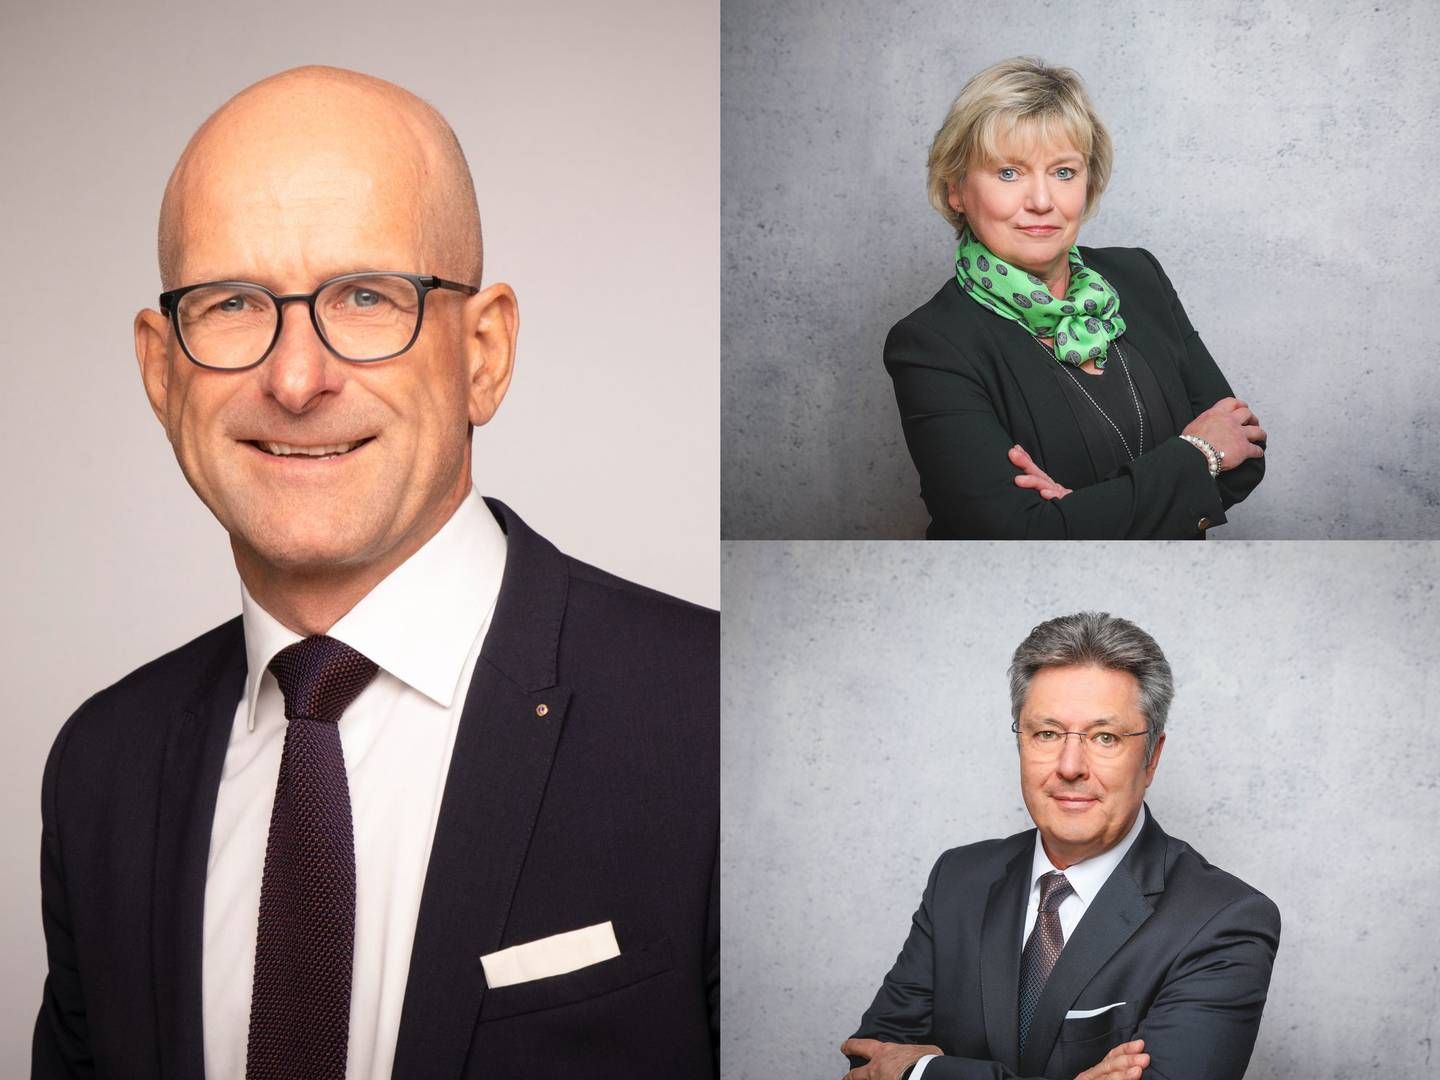 Elmar Moser, Cathtrin Itte und Stephan Schüßler (von links nach rechts, von oben nach unten) | Foto: Frankfurter Bankgesellschaft